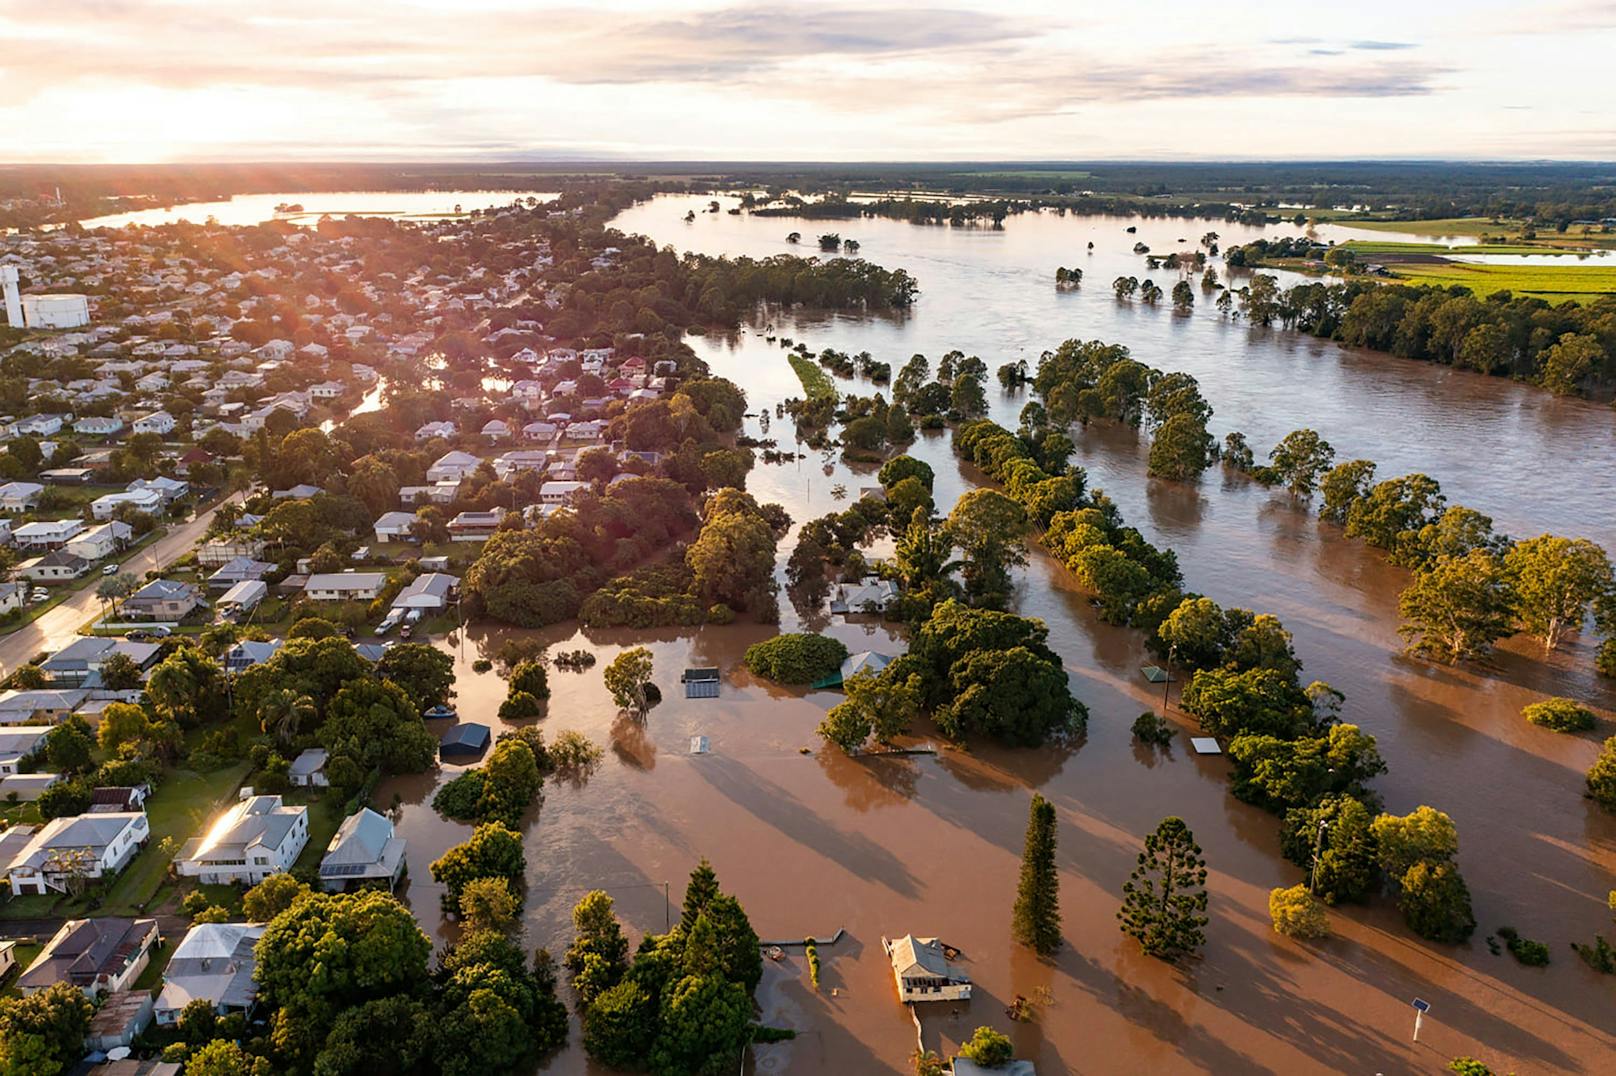 Seit Tagen anhaltende heftige Regenfälle haben die Menschen vielerorts im Nordosten Australiens in Not gebracht.